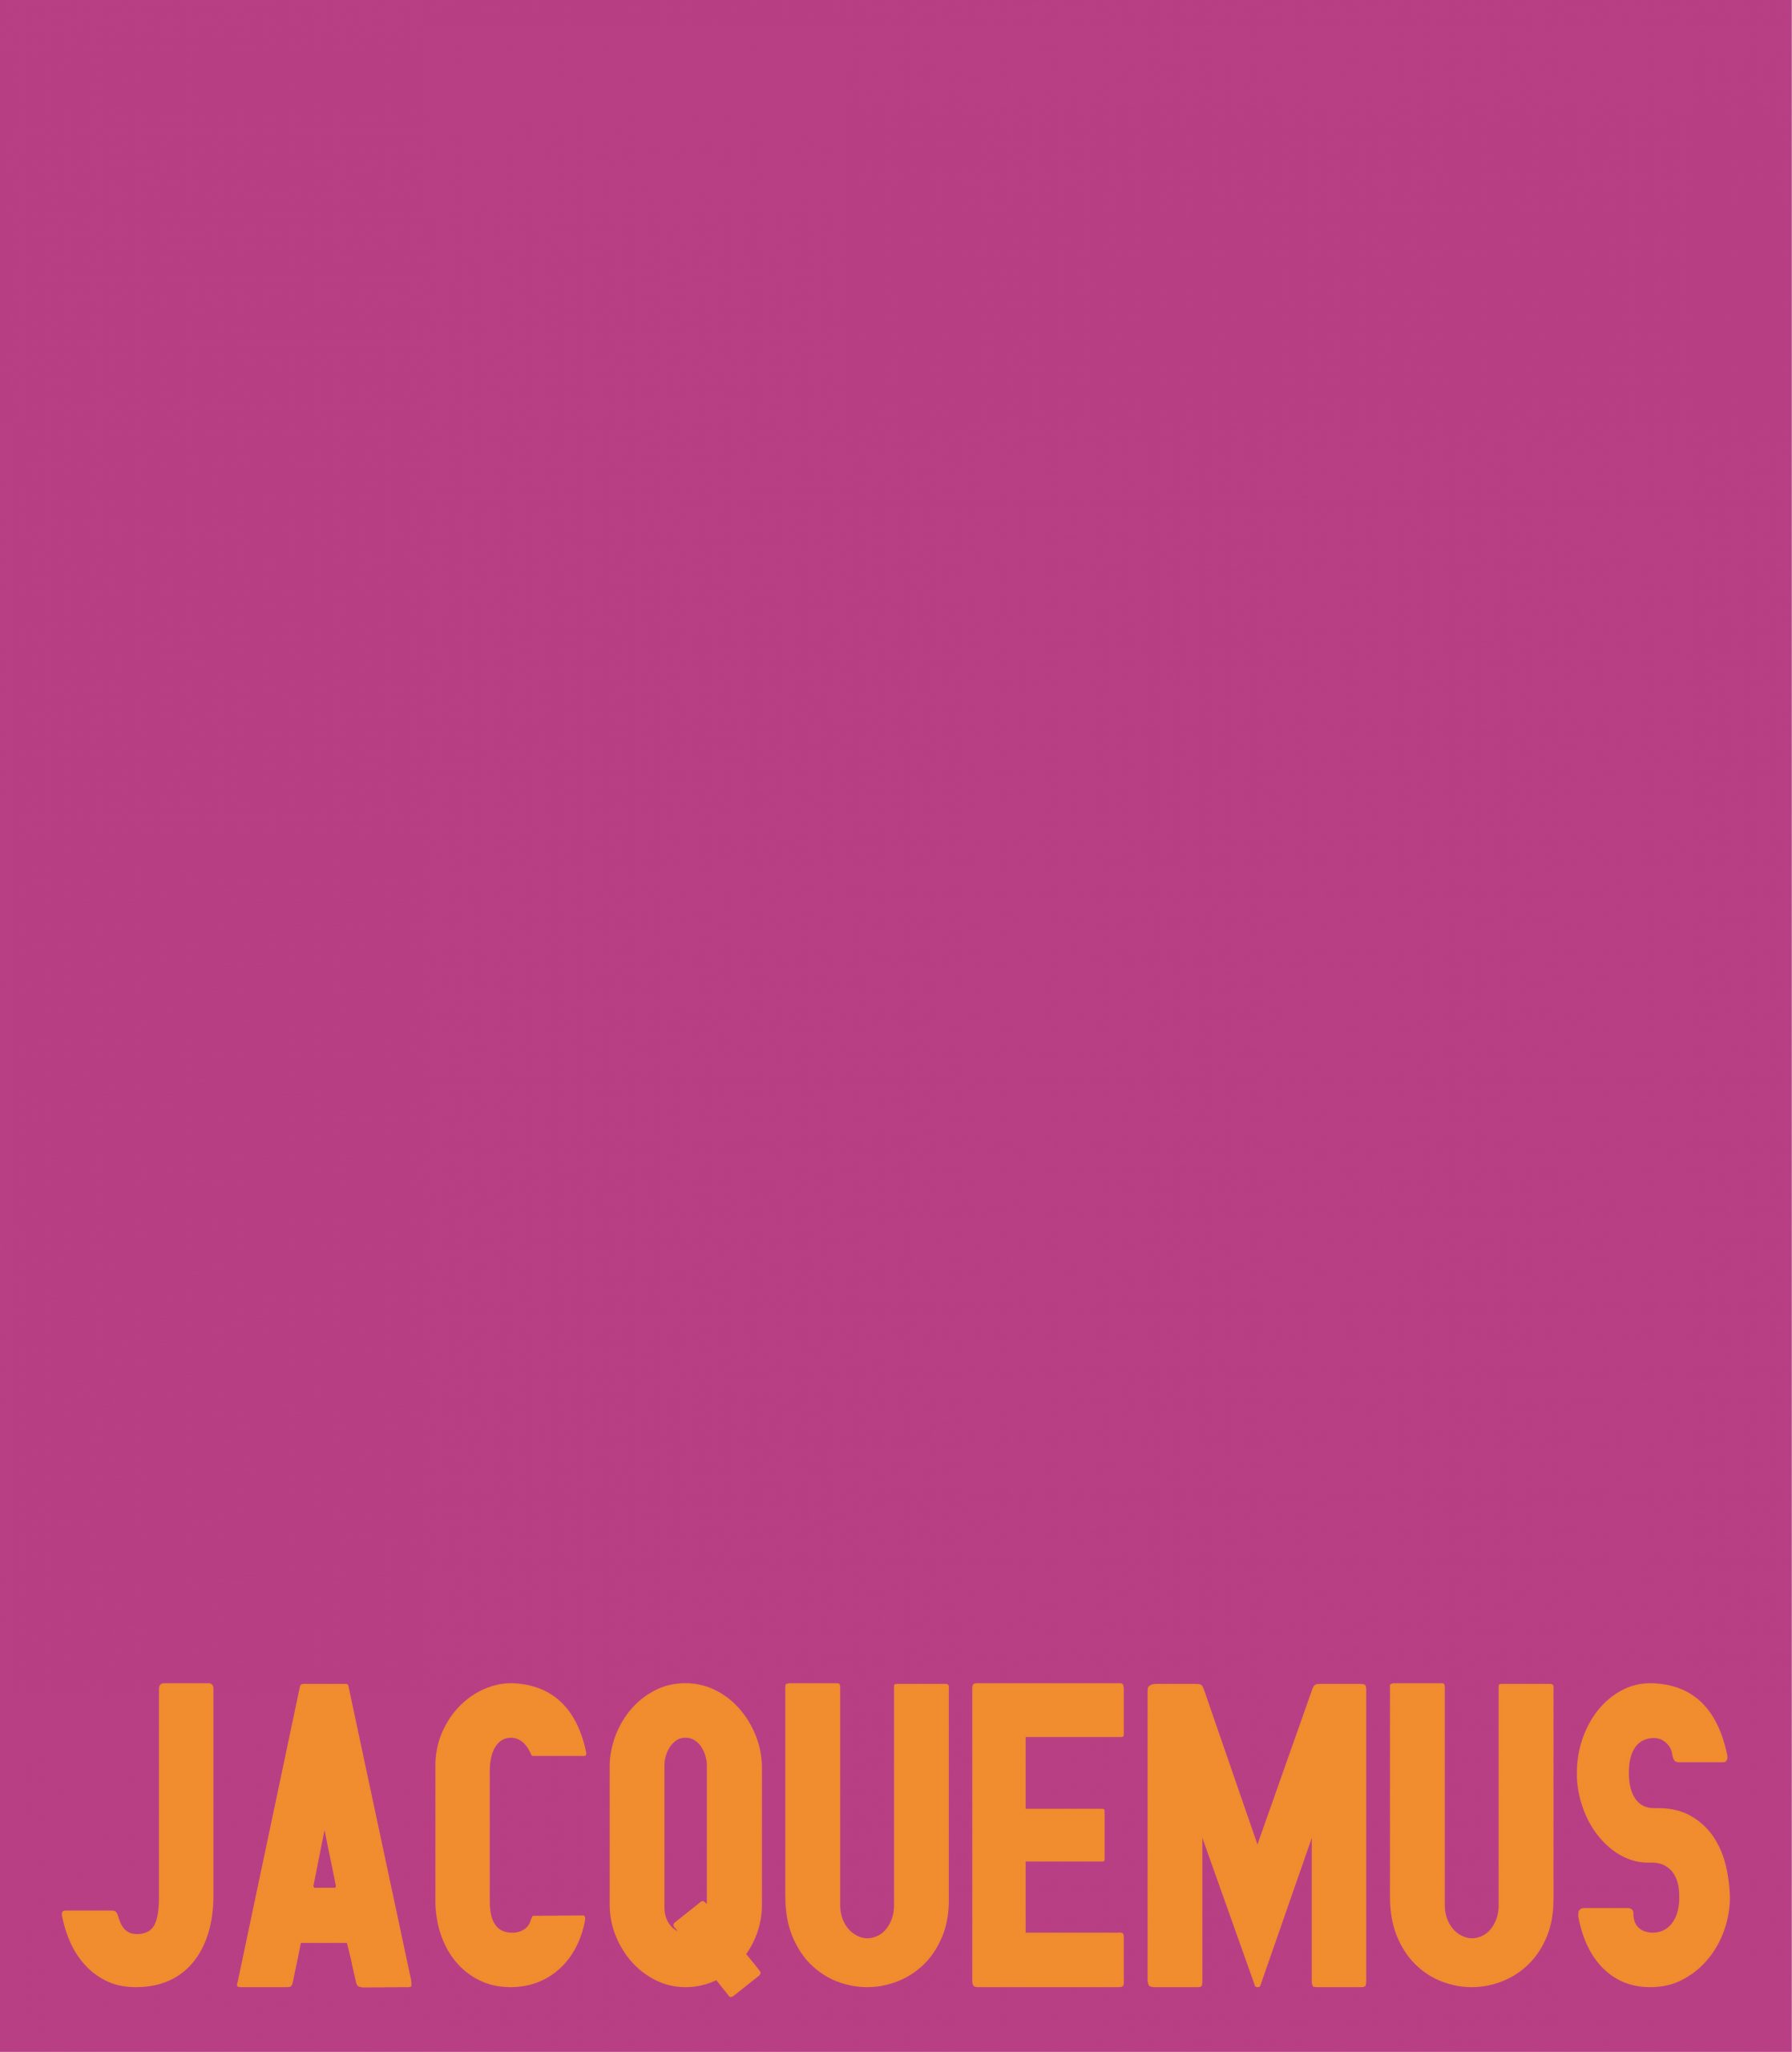 Jacquemus | Graphic Elisava degree show 2022